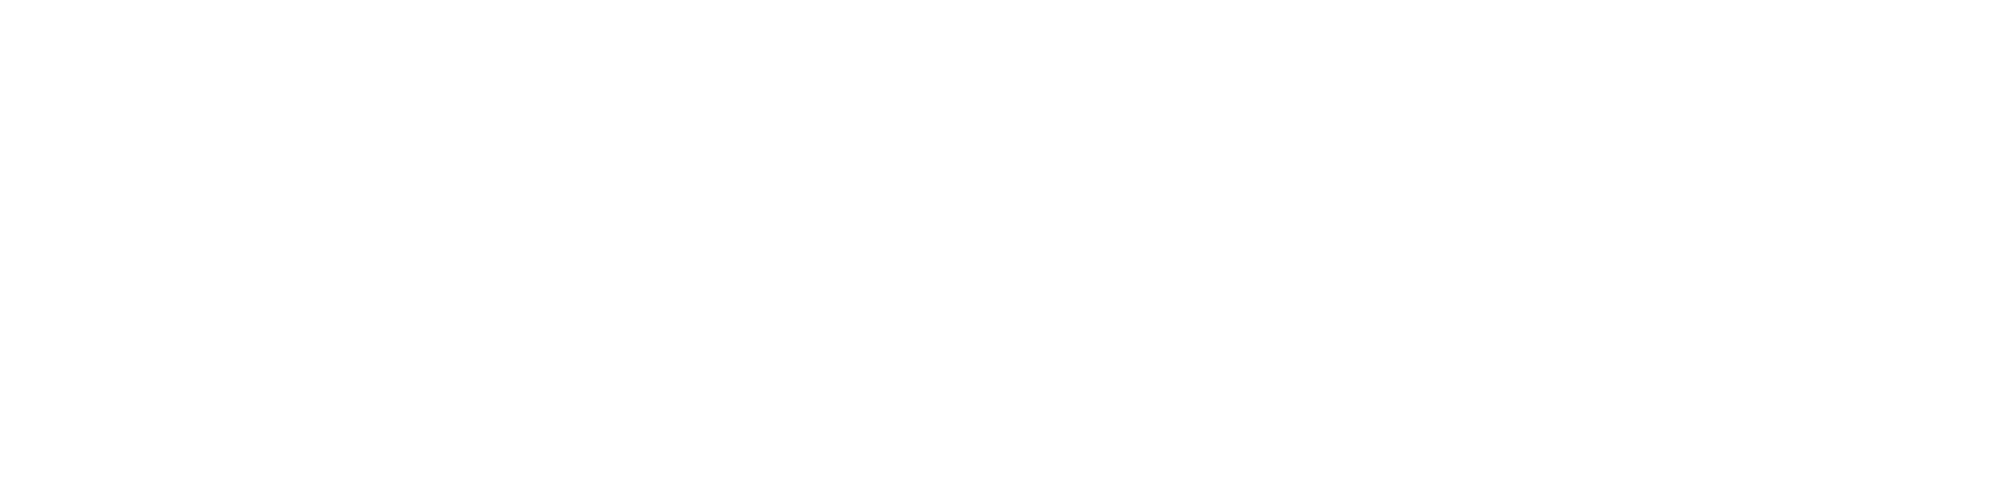 Education Evolving logo in white